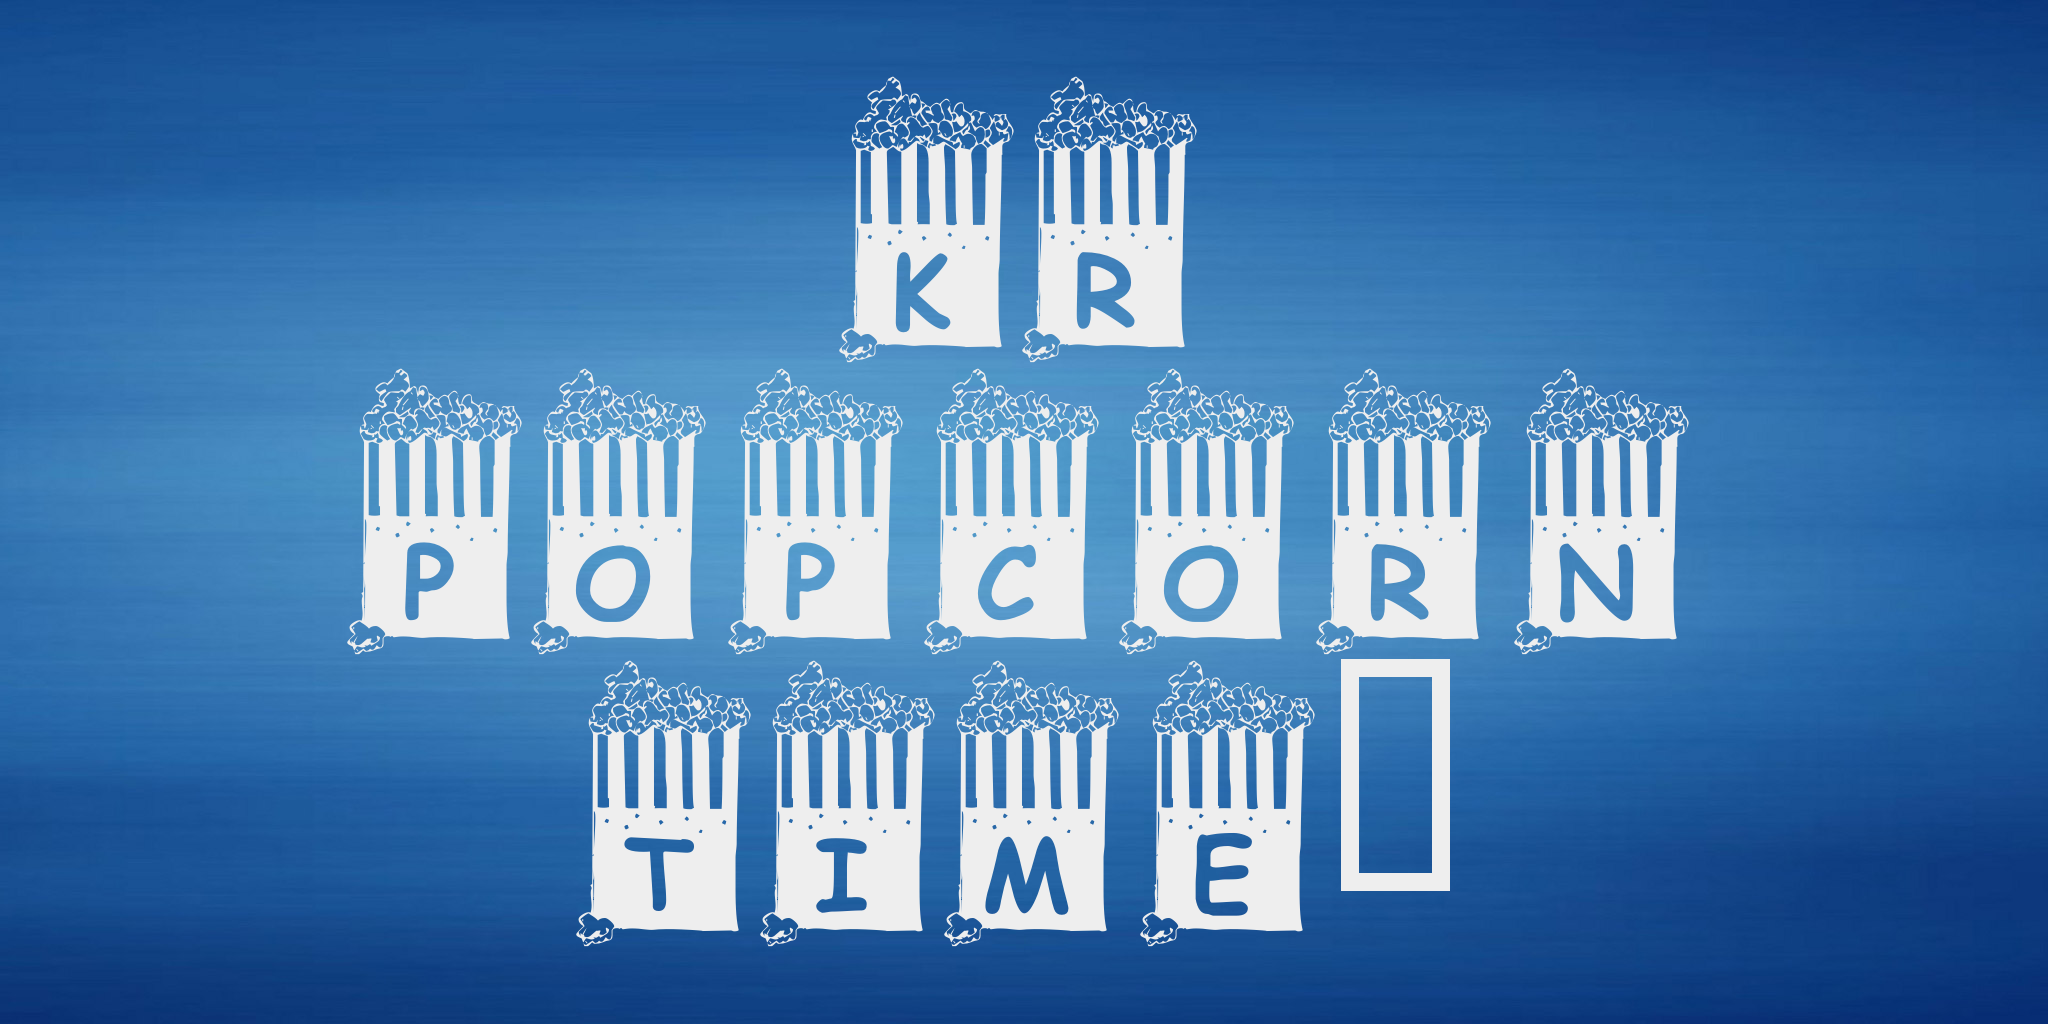 Kr Popcorn Time